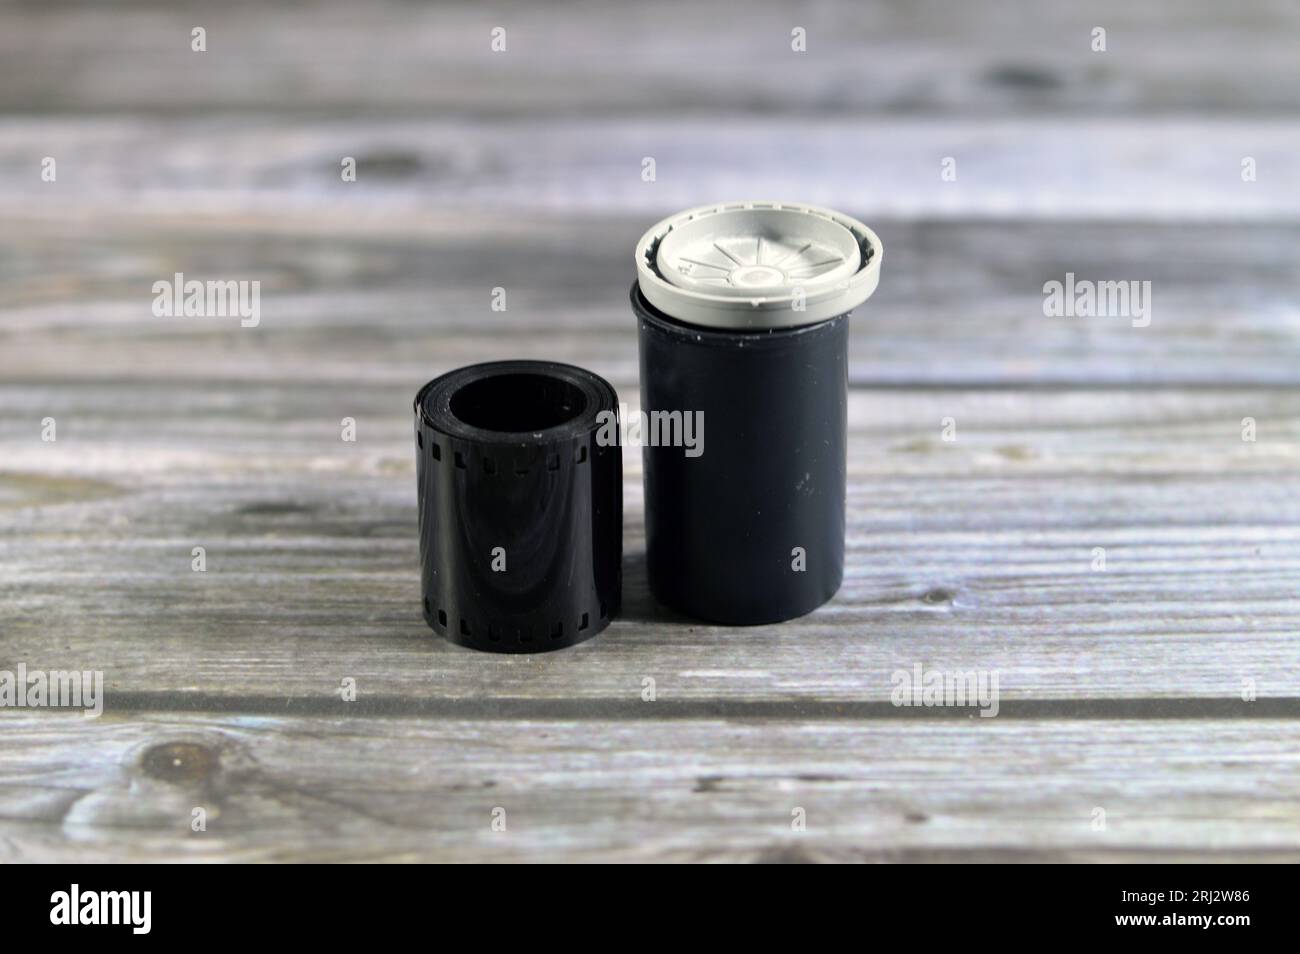 Film en rouleau ou film en rouleau, tout type de film photographique enroulé en bobine protégé de l'exposition à la lumière blanche par un support en papier, avec une forme caractéristique de 35 mm Banque D'Images